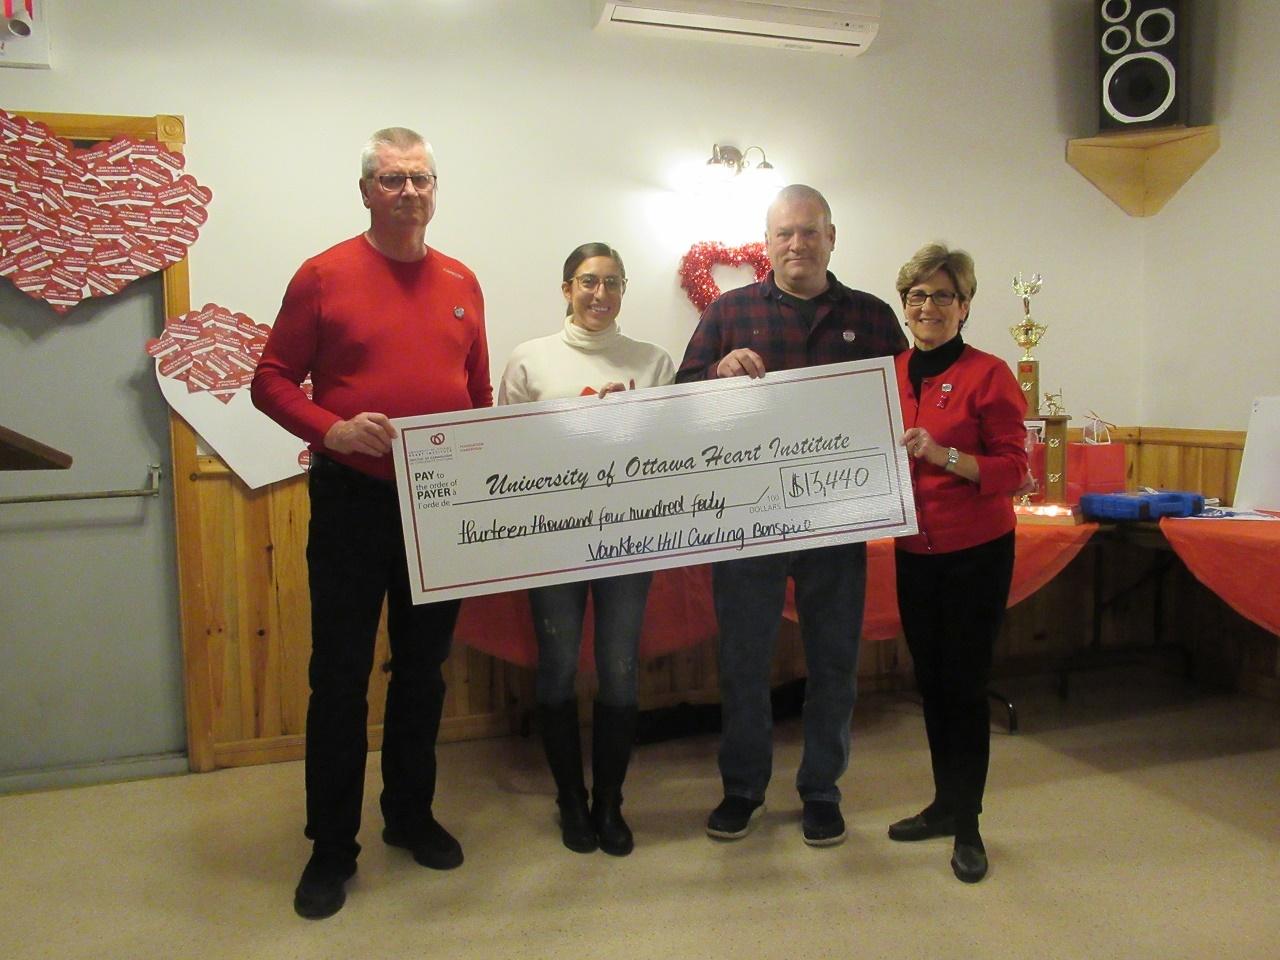 Bonspiel raises more than $25,000 for Ottawa Heart Institute